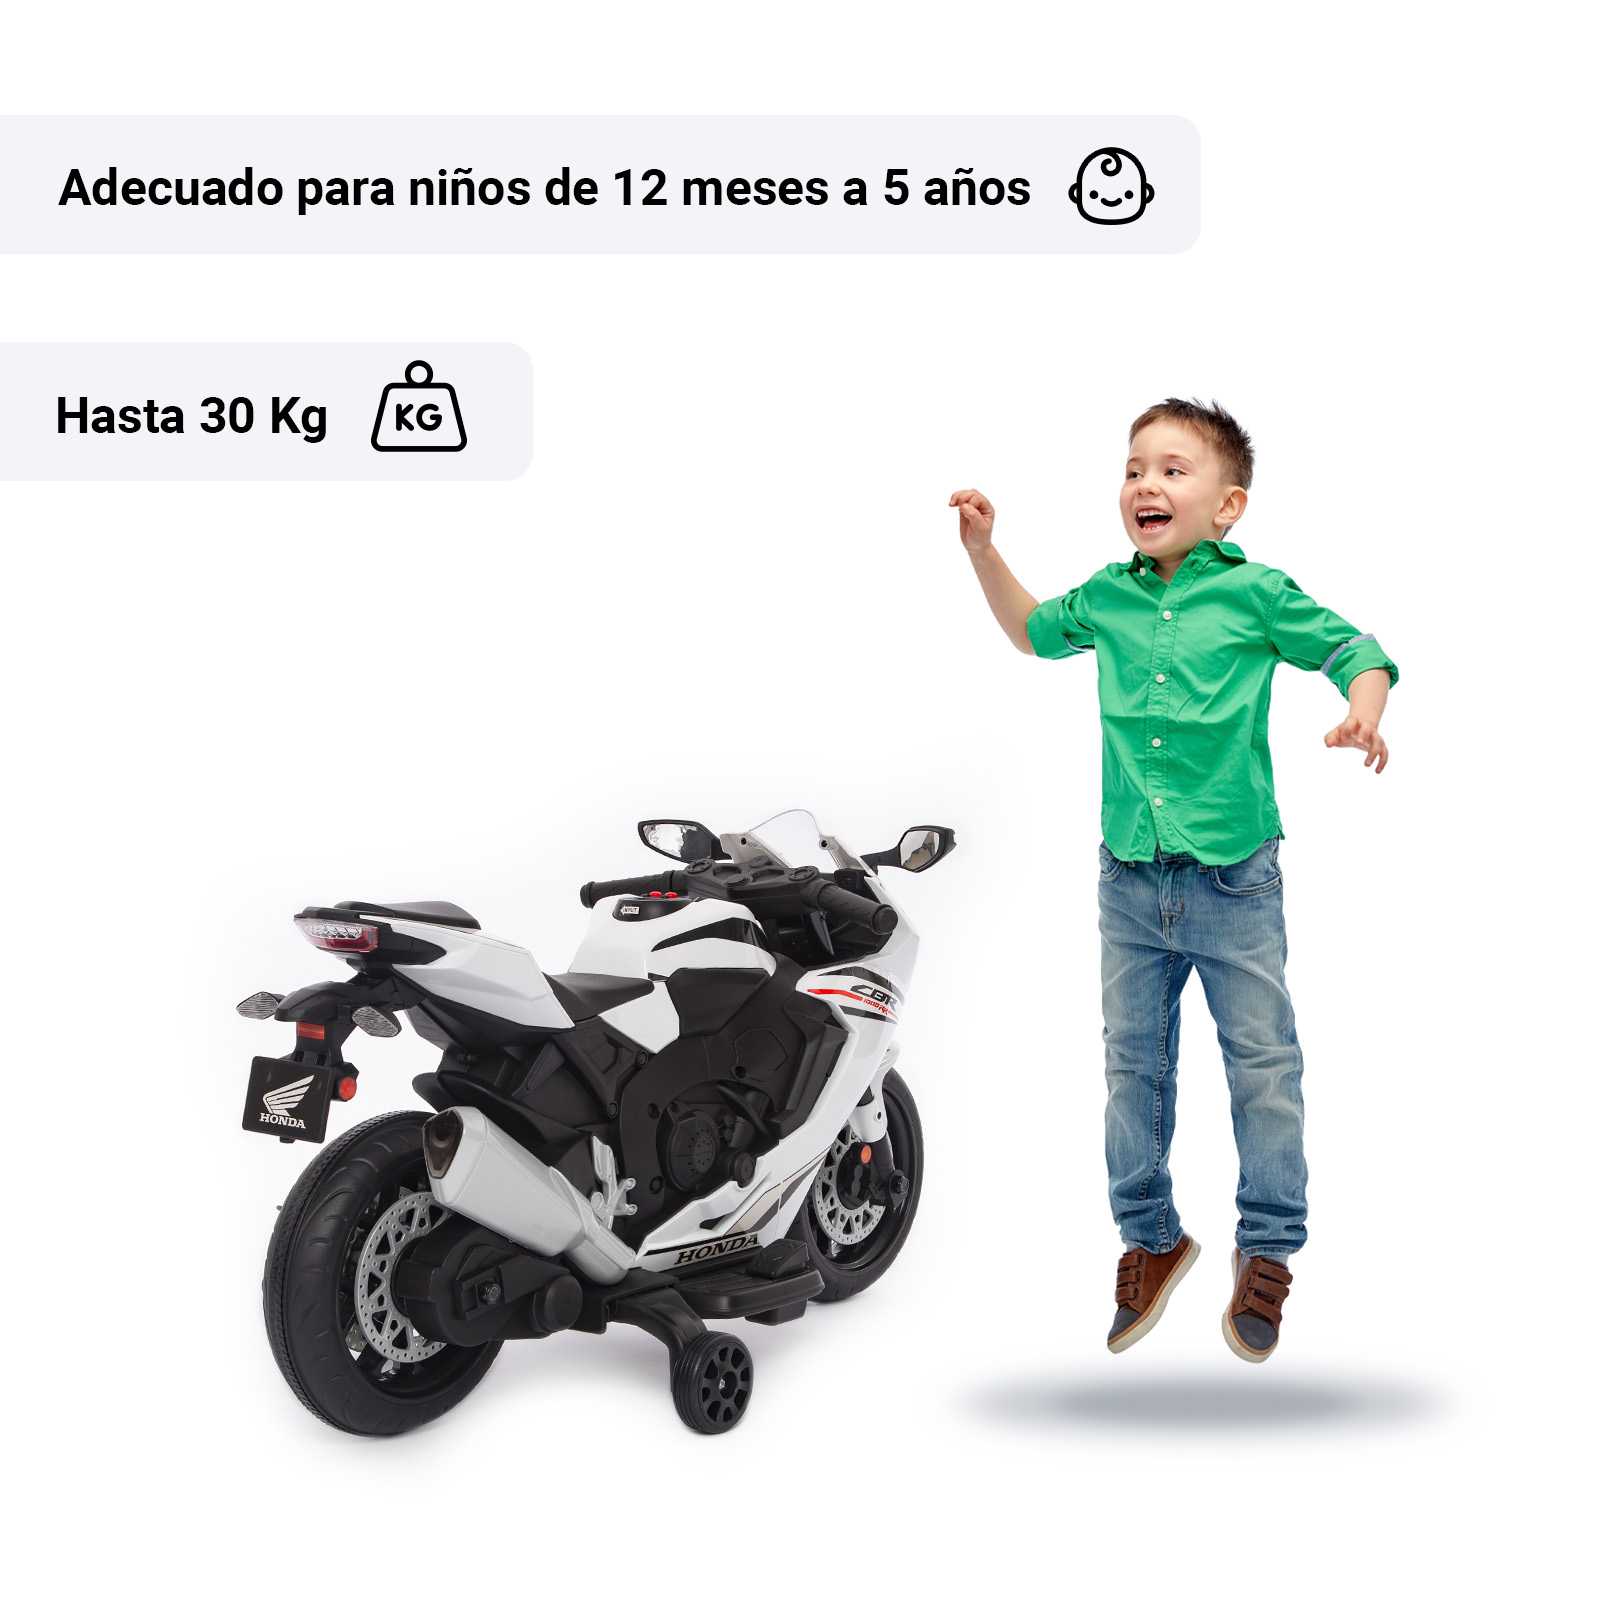 Honda CBR 1000 con niño